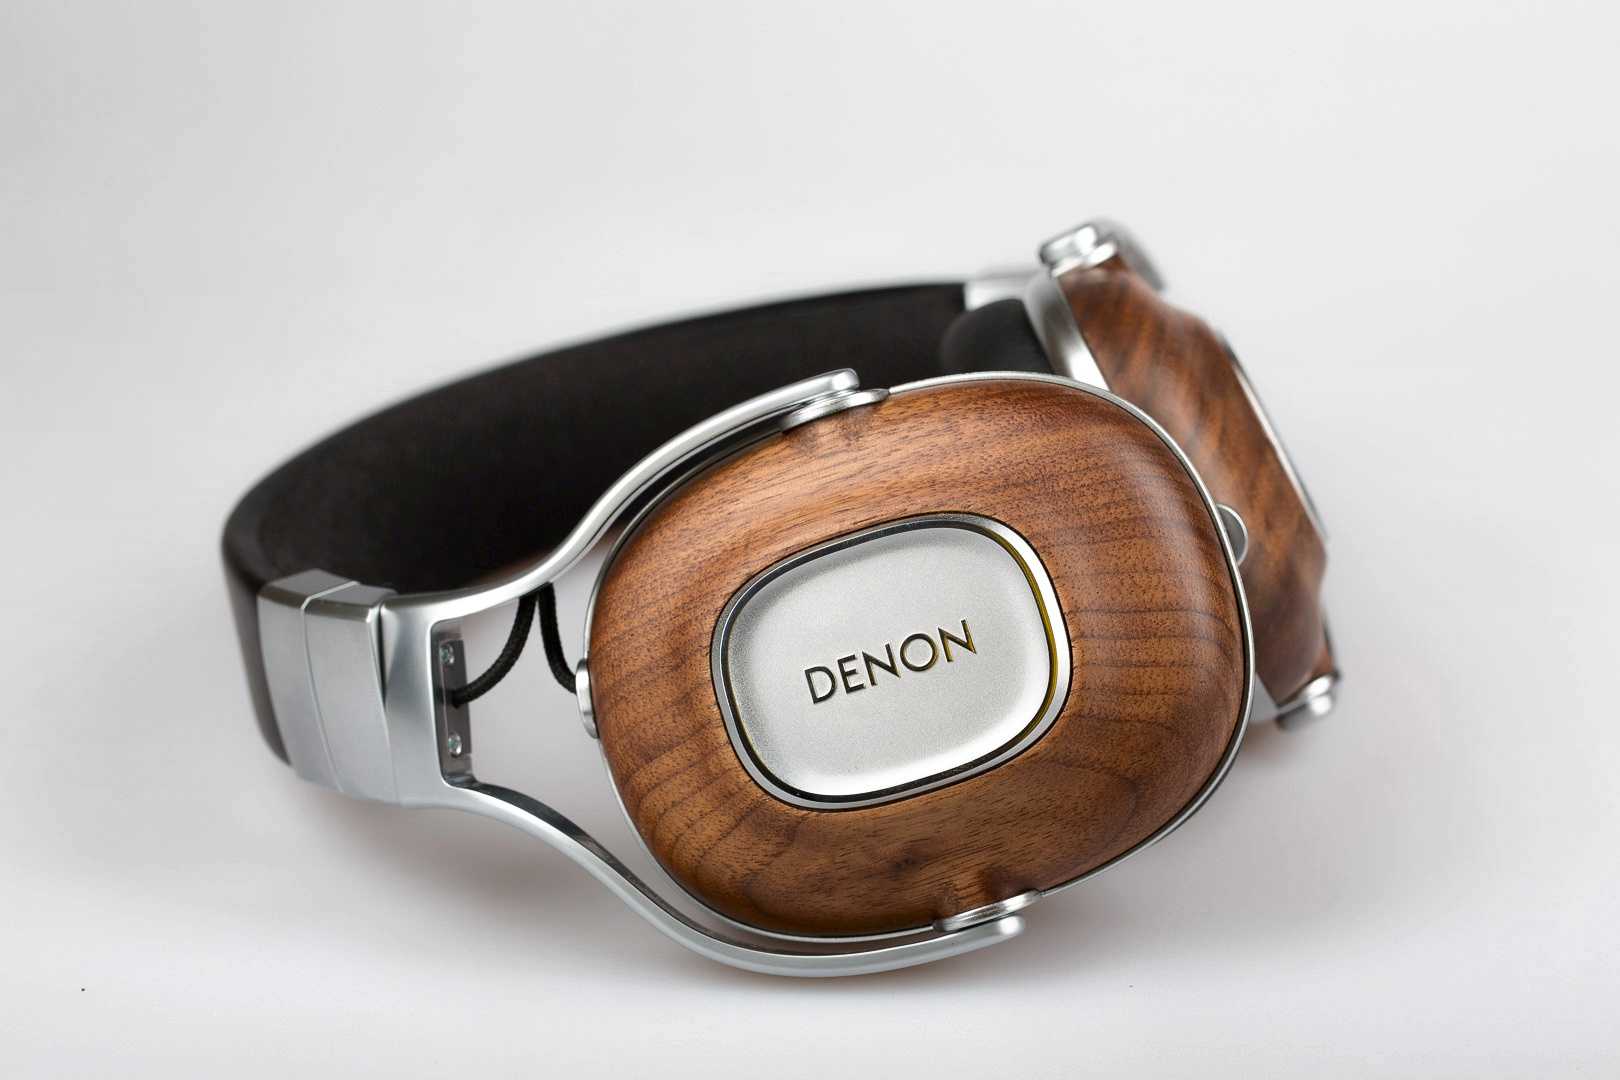 Denon ah-nc600 - купить  в донецк, скидки, цена, отзывы, обзор, характеристики - bluetooth гарнитуры и наушники